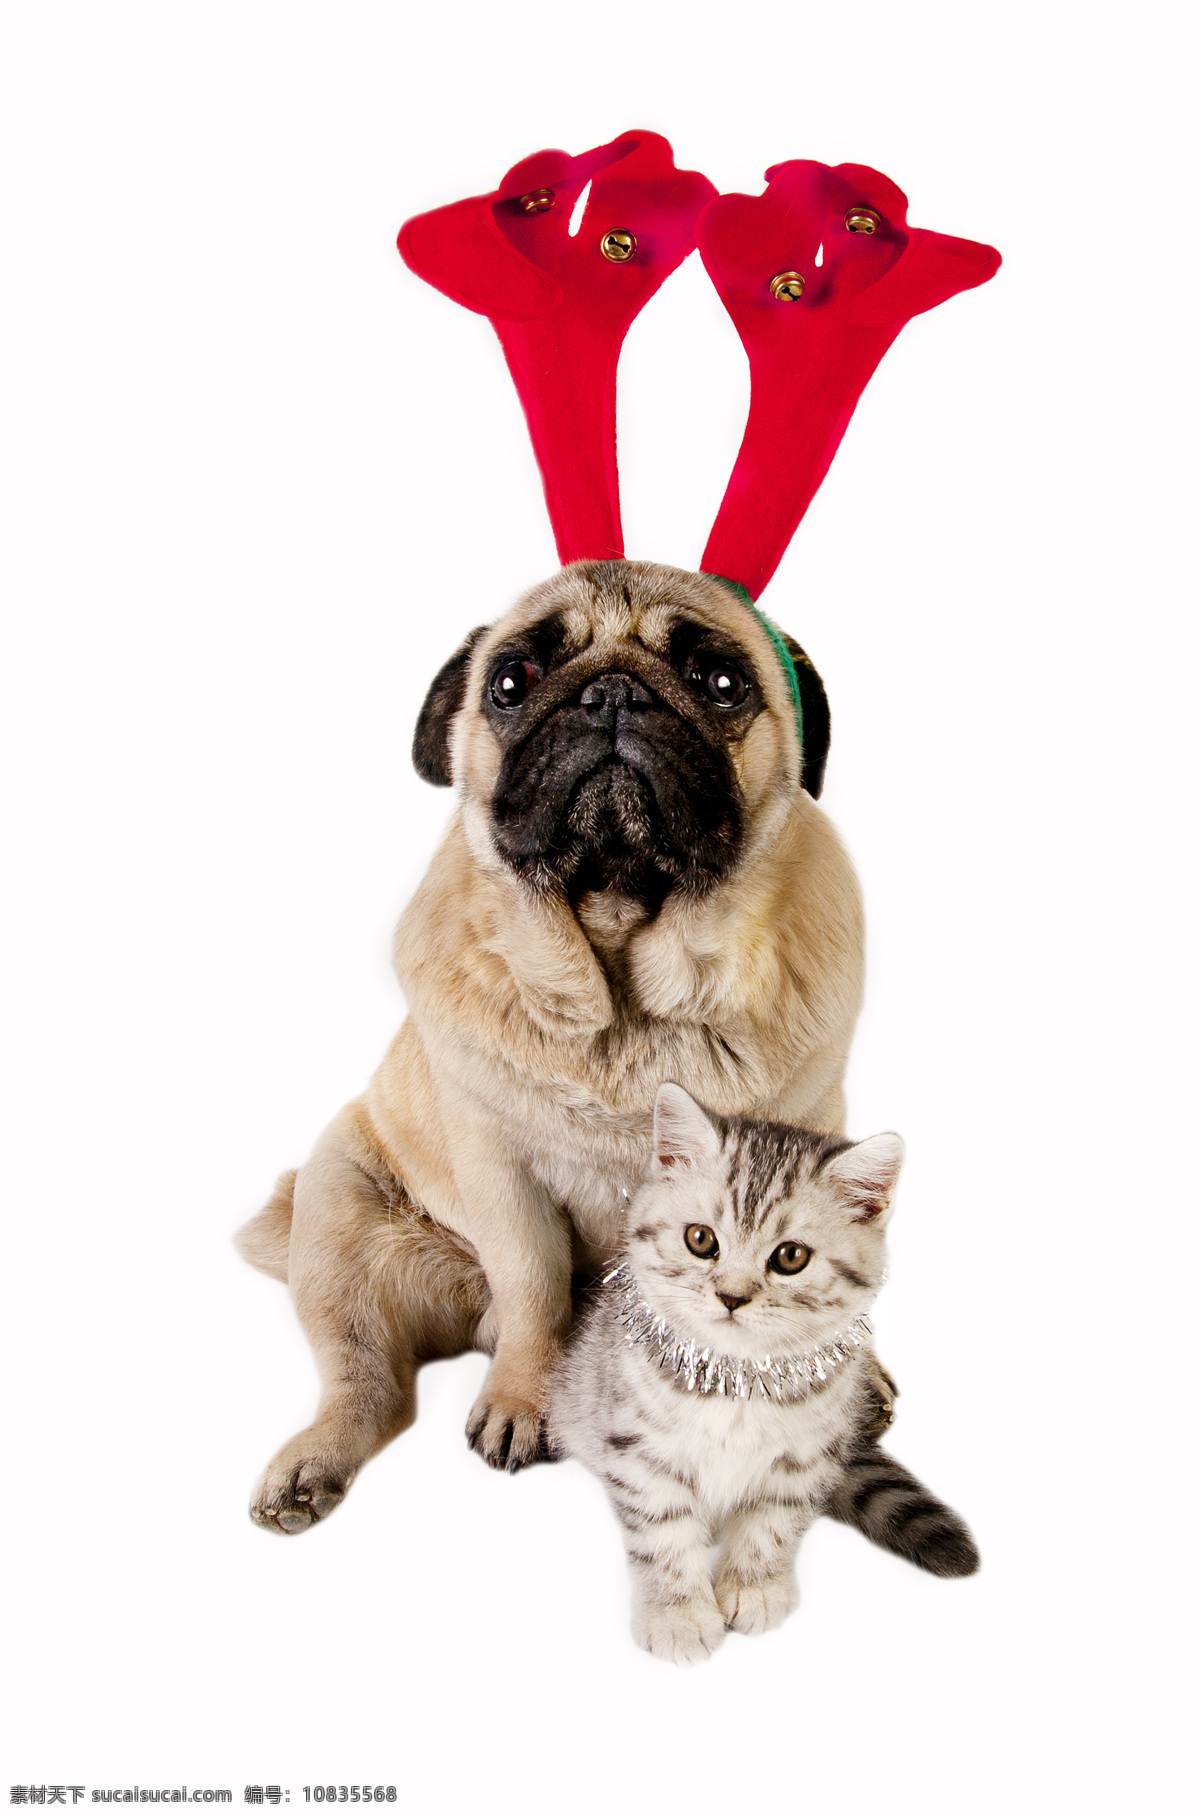 圣诞狗和猫 圣诞狗 圣诞猫 小狗 小猫 狗 猫 圣诞节 圣诞动物 小动物 可爱 狗和猫 陆地动物 生物世界 白色